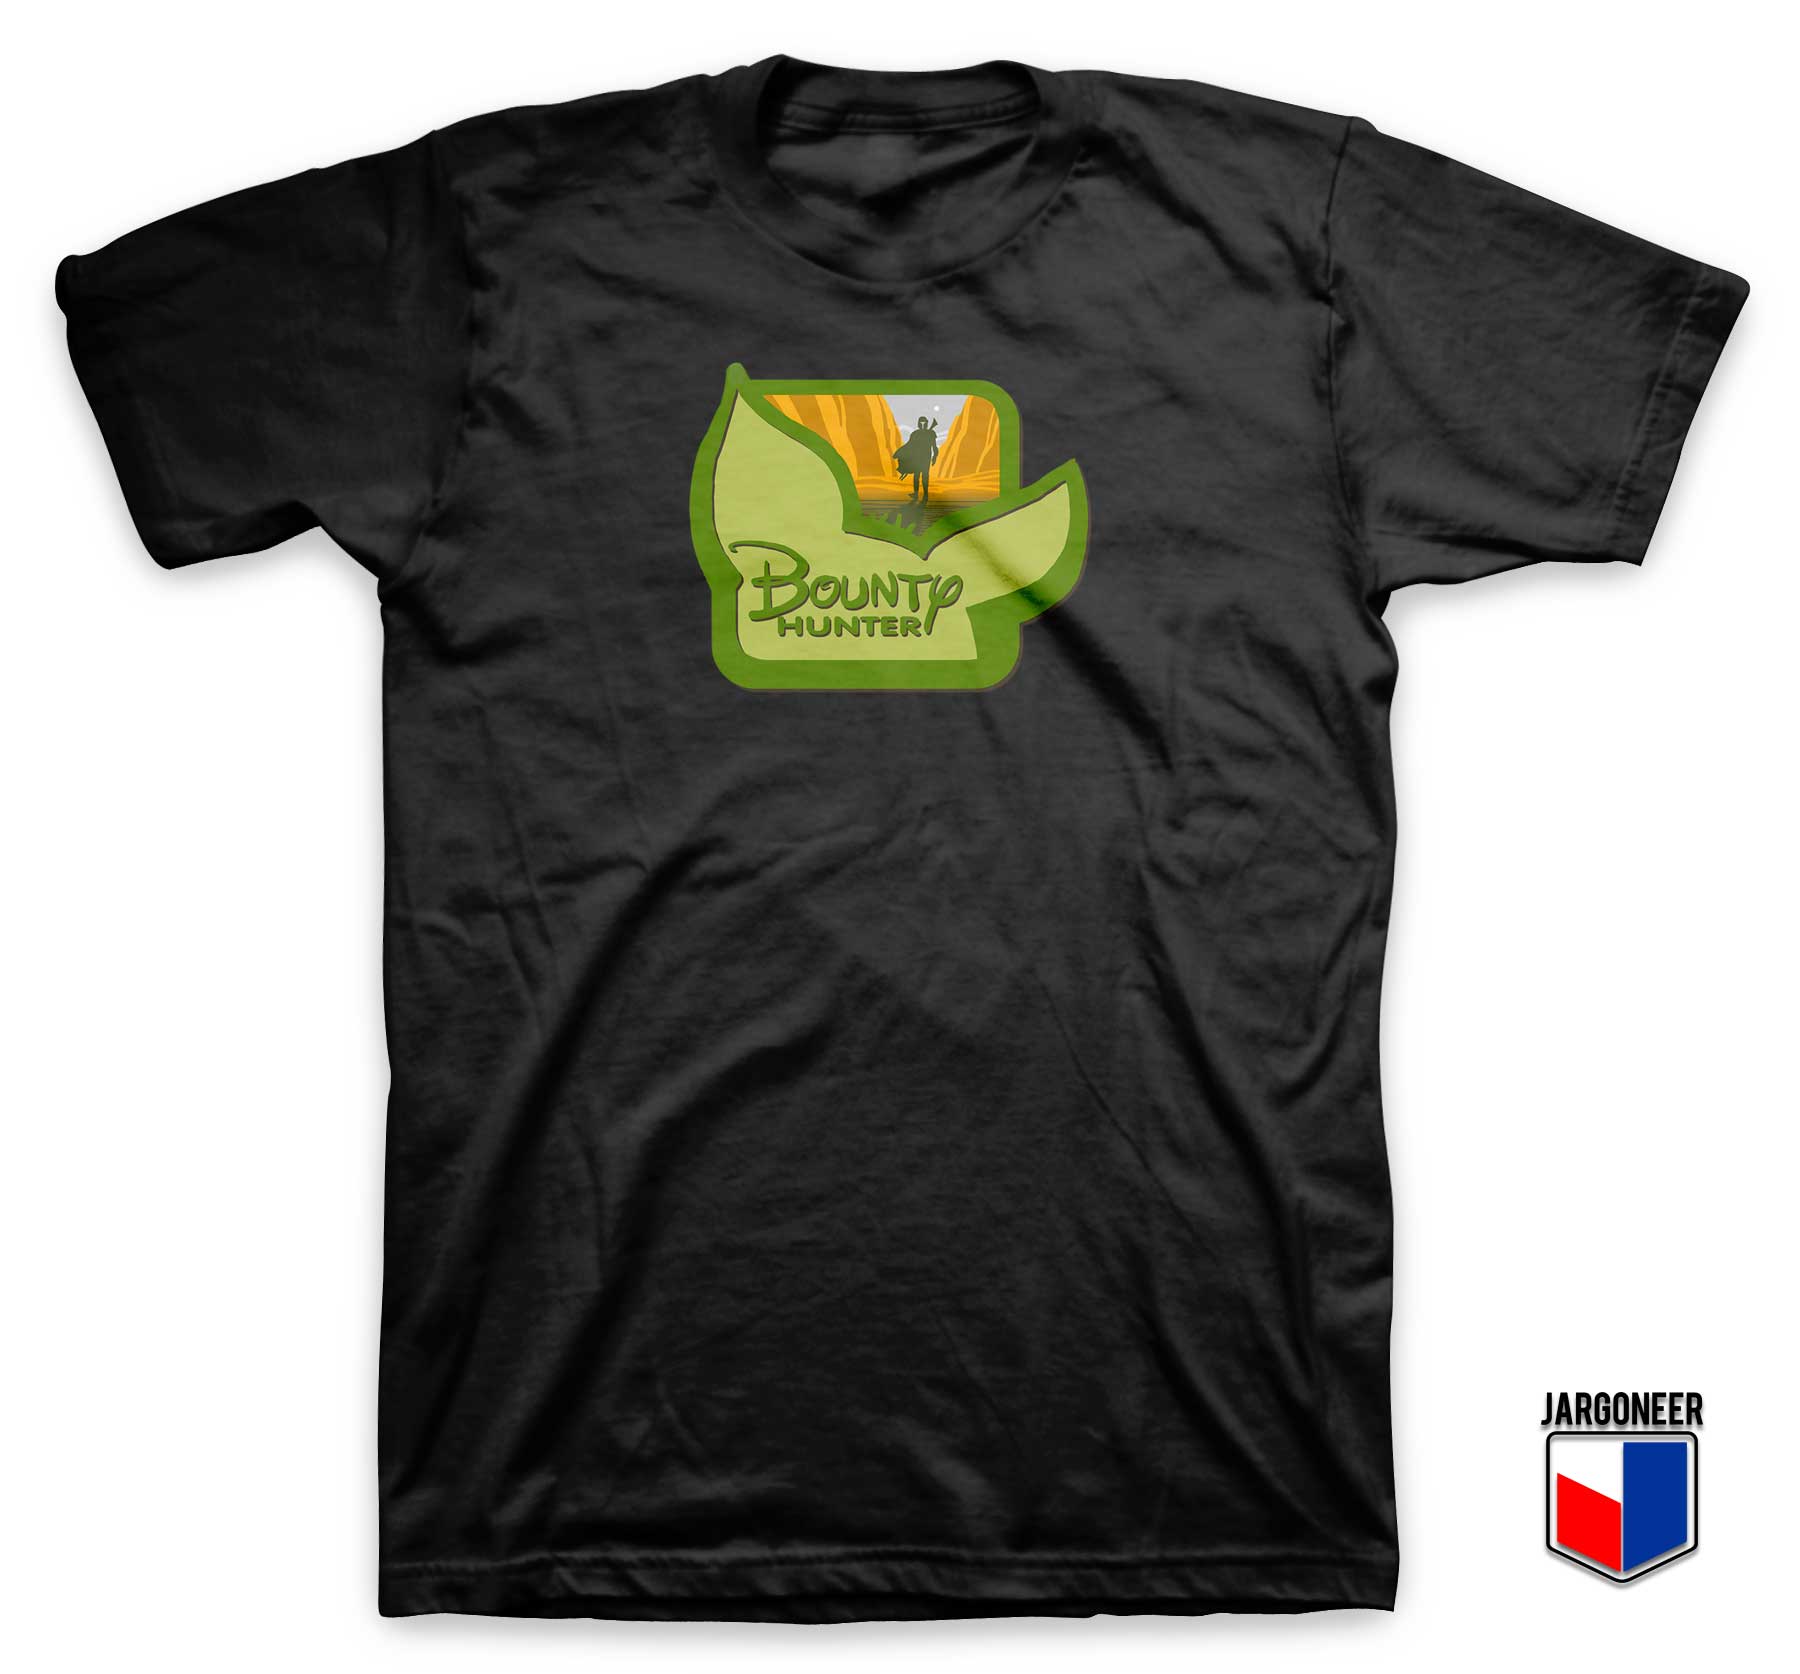 Bounty Hunter Channel T Shirt - Shop Unique Graphic Cool Shirt Designs